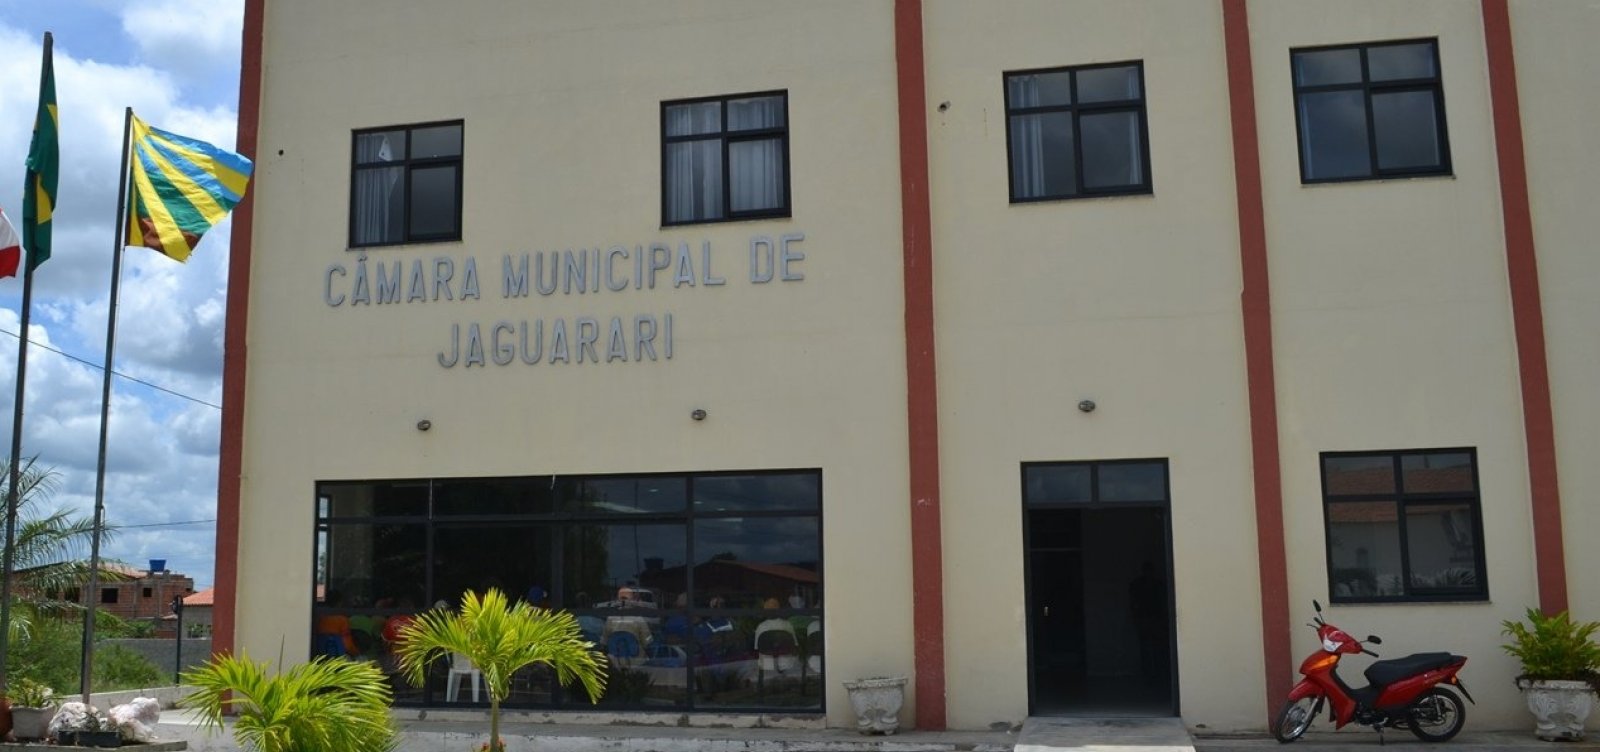 Jaguarari: Câmara encerra processo de cassação do prefeito